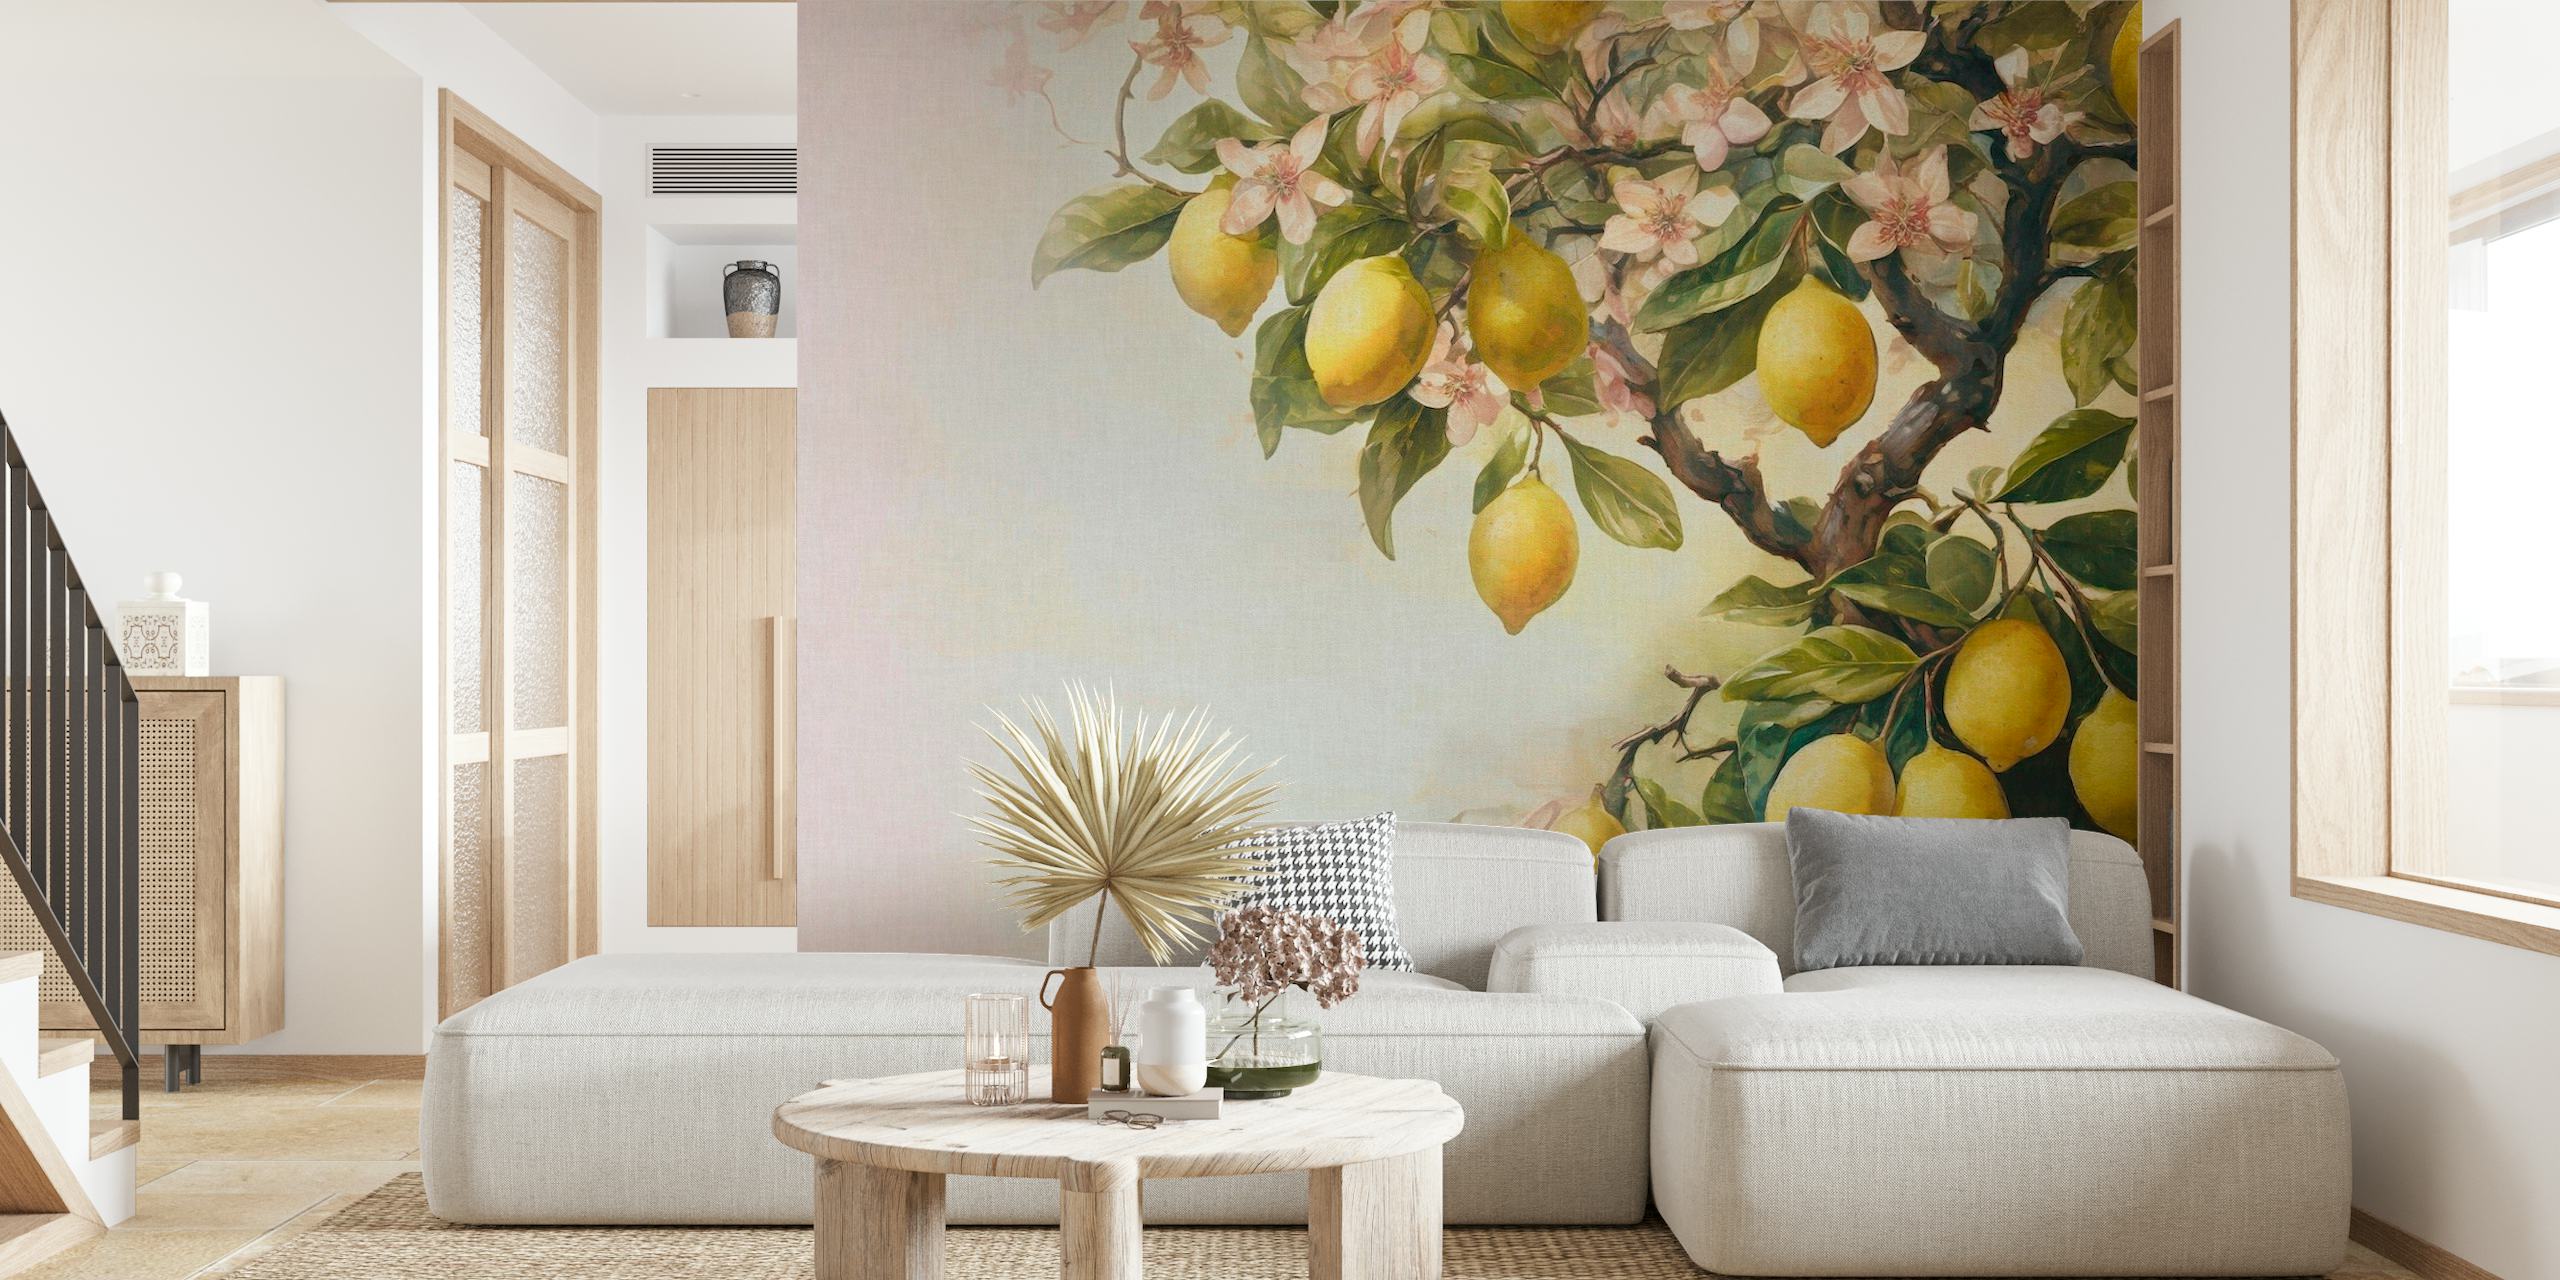 Fotobehang van een citroenboom met rijpe citroenen en bloesems in zachte vintage tinten